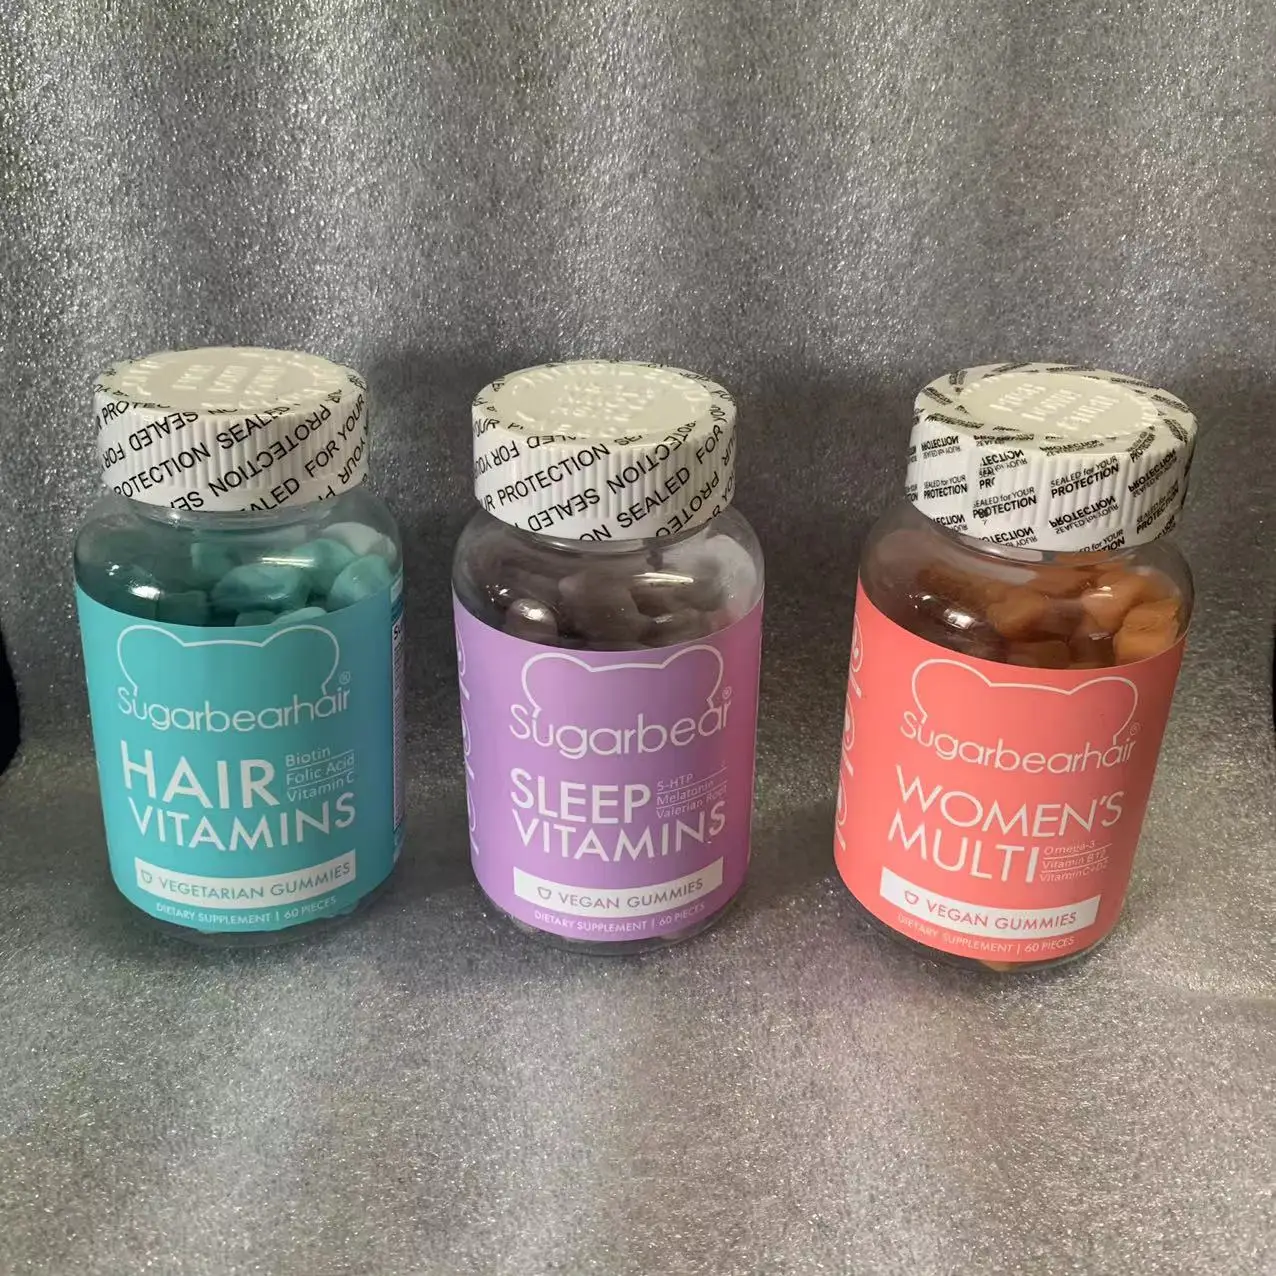 

New Sugar bear hair hair vitamins Vegetarian Gummies 60 pieces Women's Multi Vitamin B/C Sleep Vitamins New Sealed